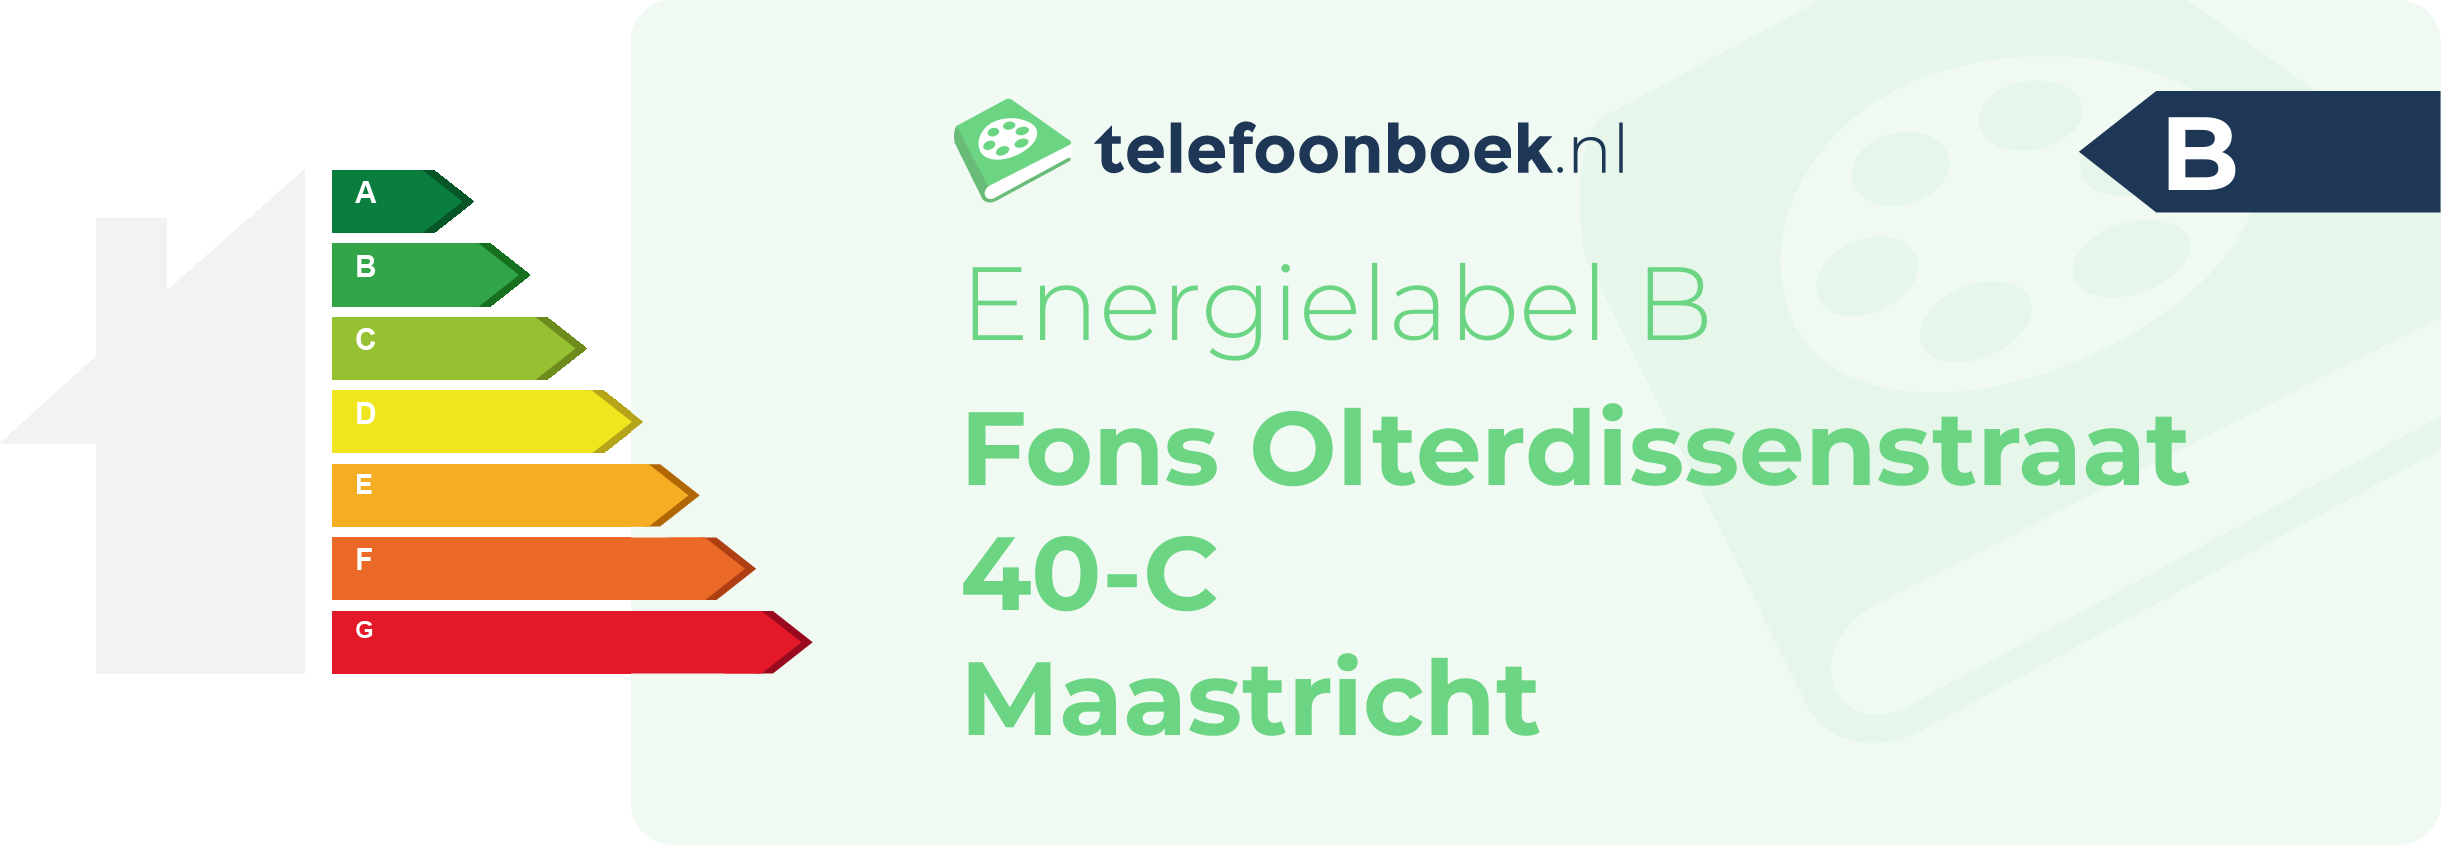 Energielabel Fons Olterdissenstraat 40-C Maastricht